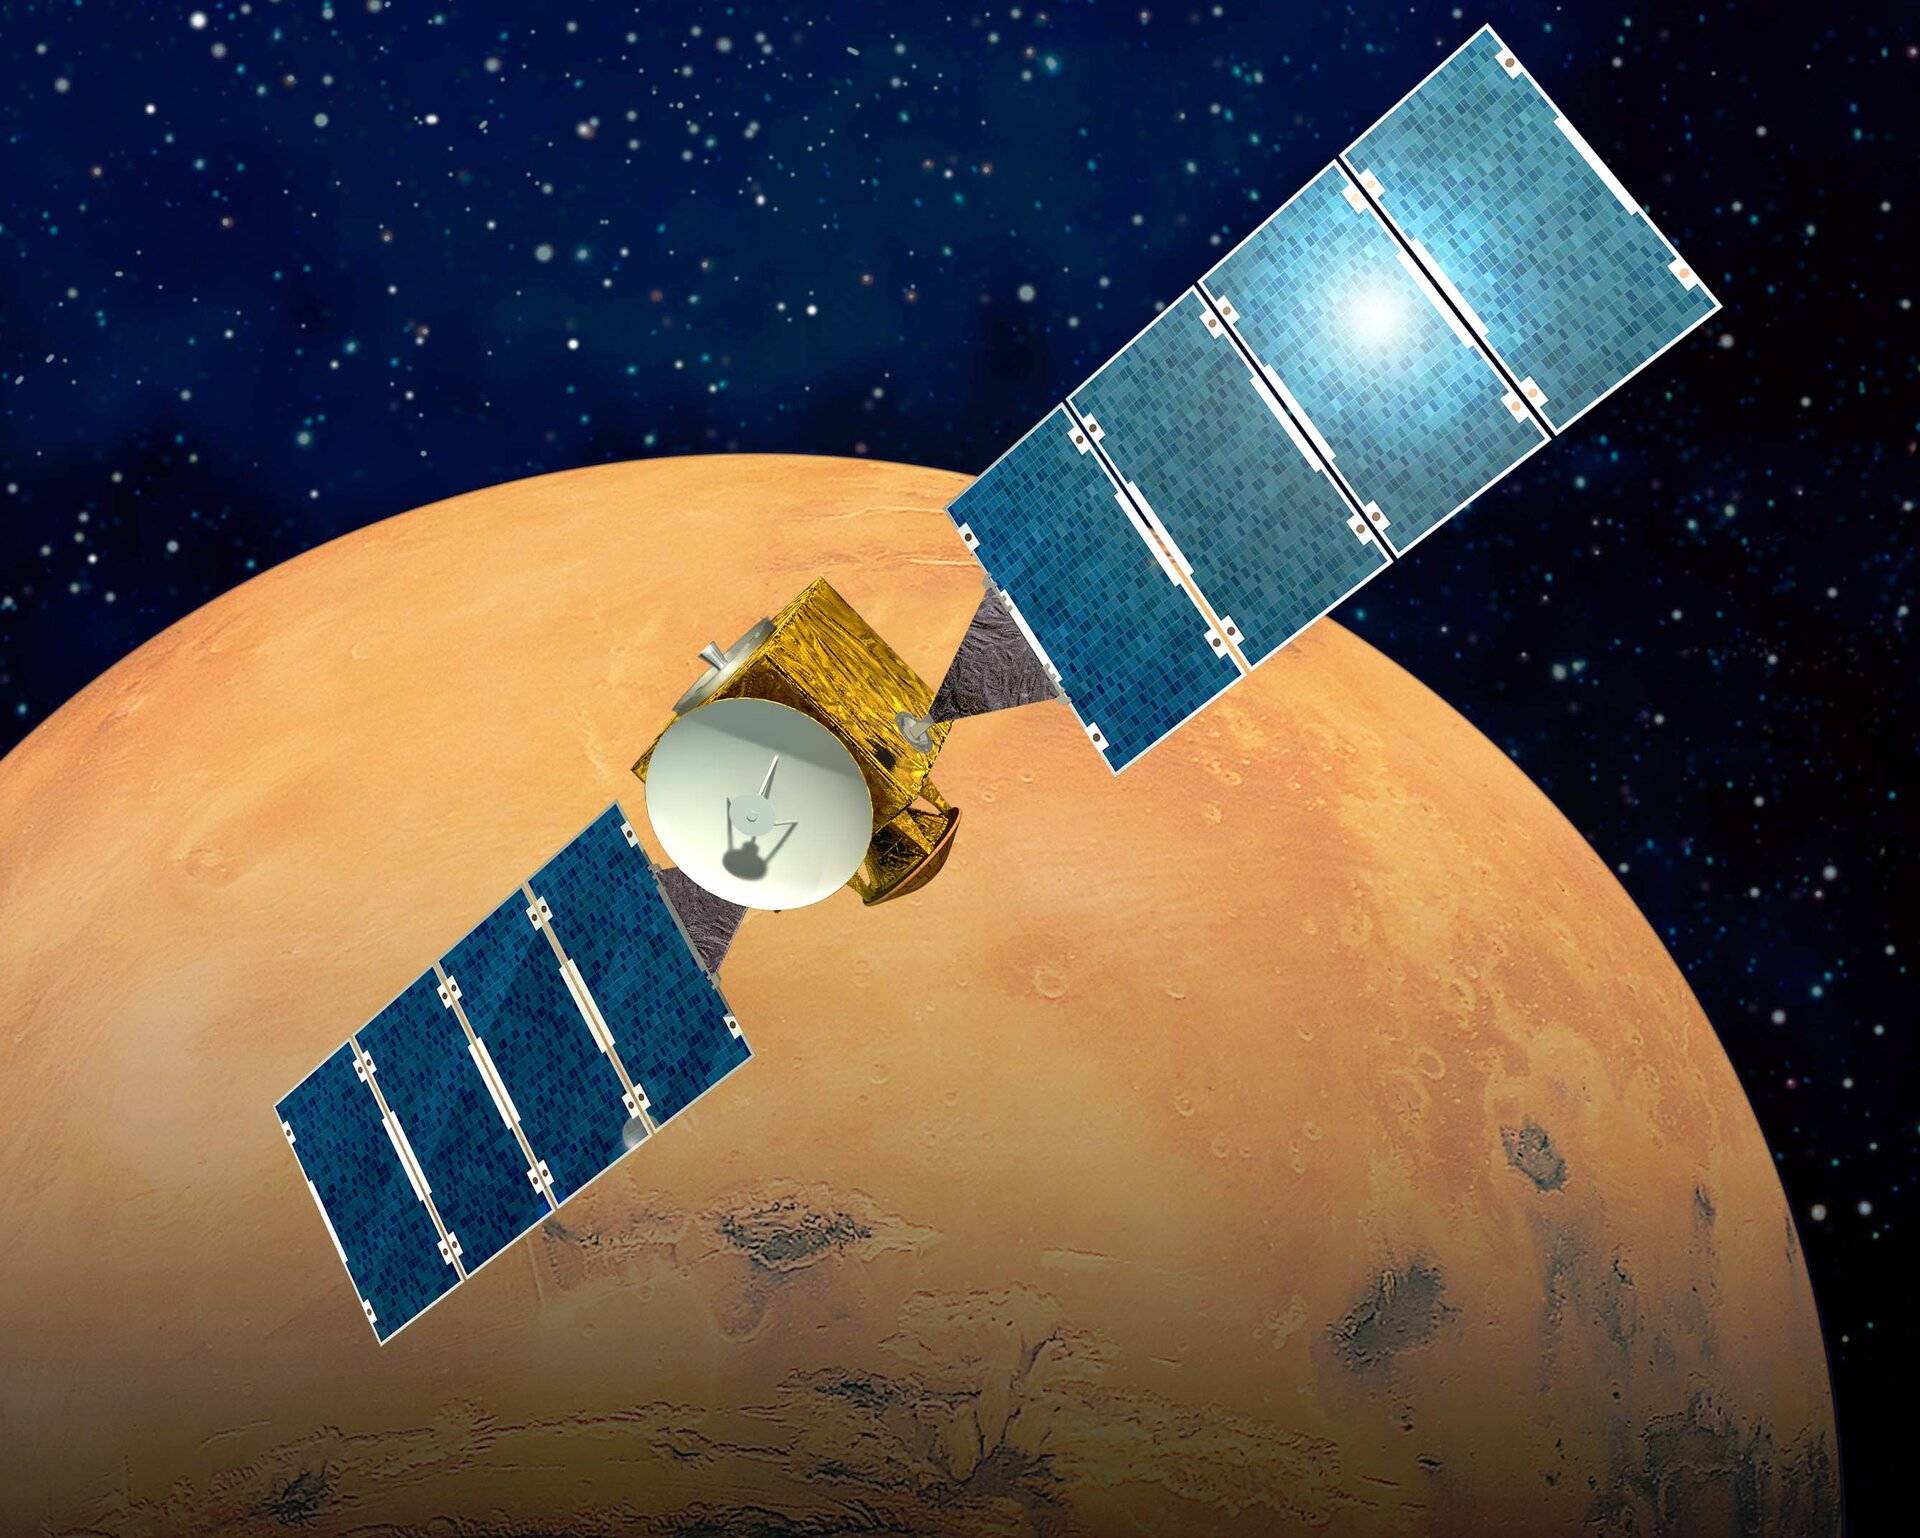 Ostrze Mars Express aktualizuje statek kosmiczny orbitalny po 19 latach • The Record